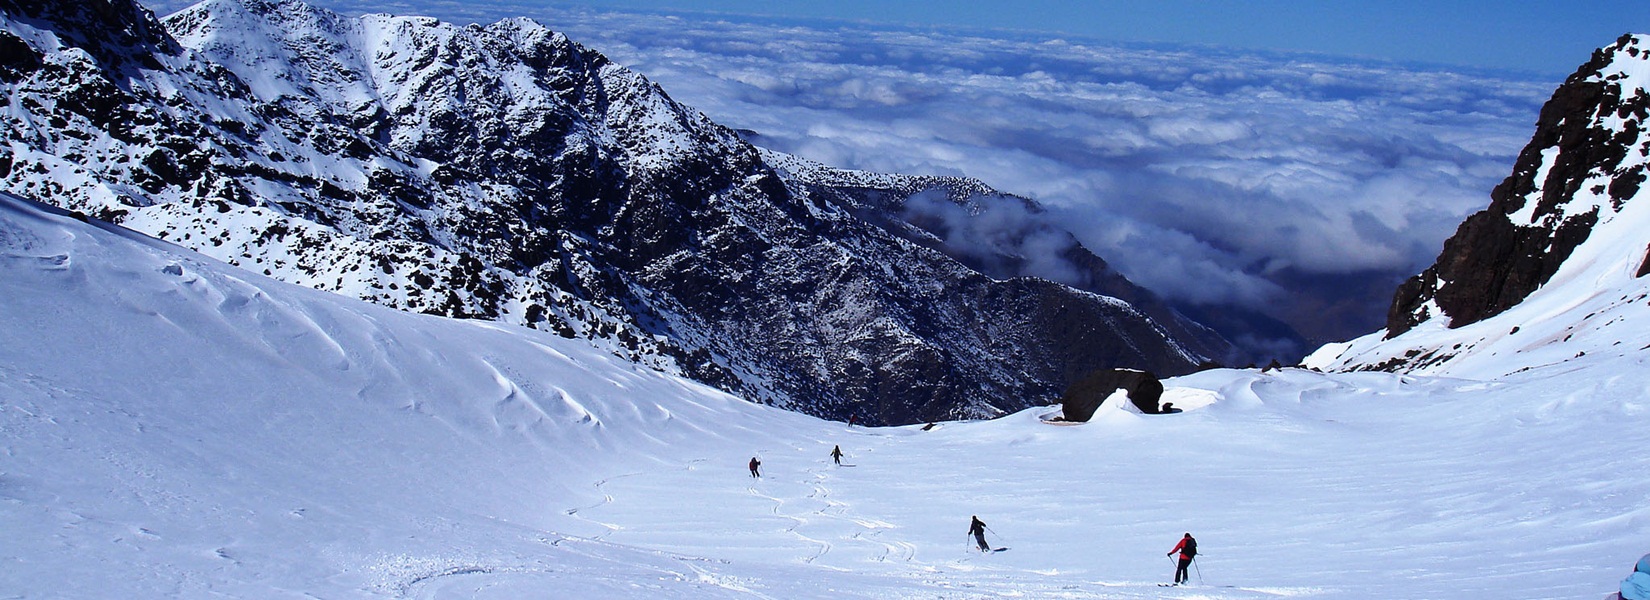 Morocco Ski Toring 